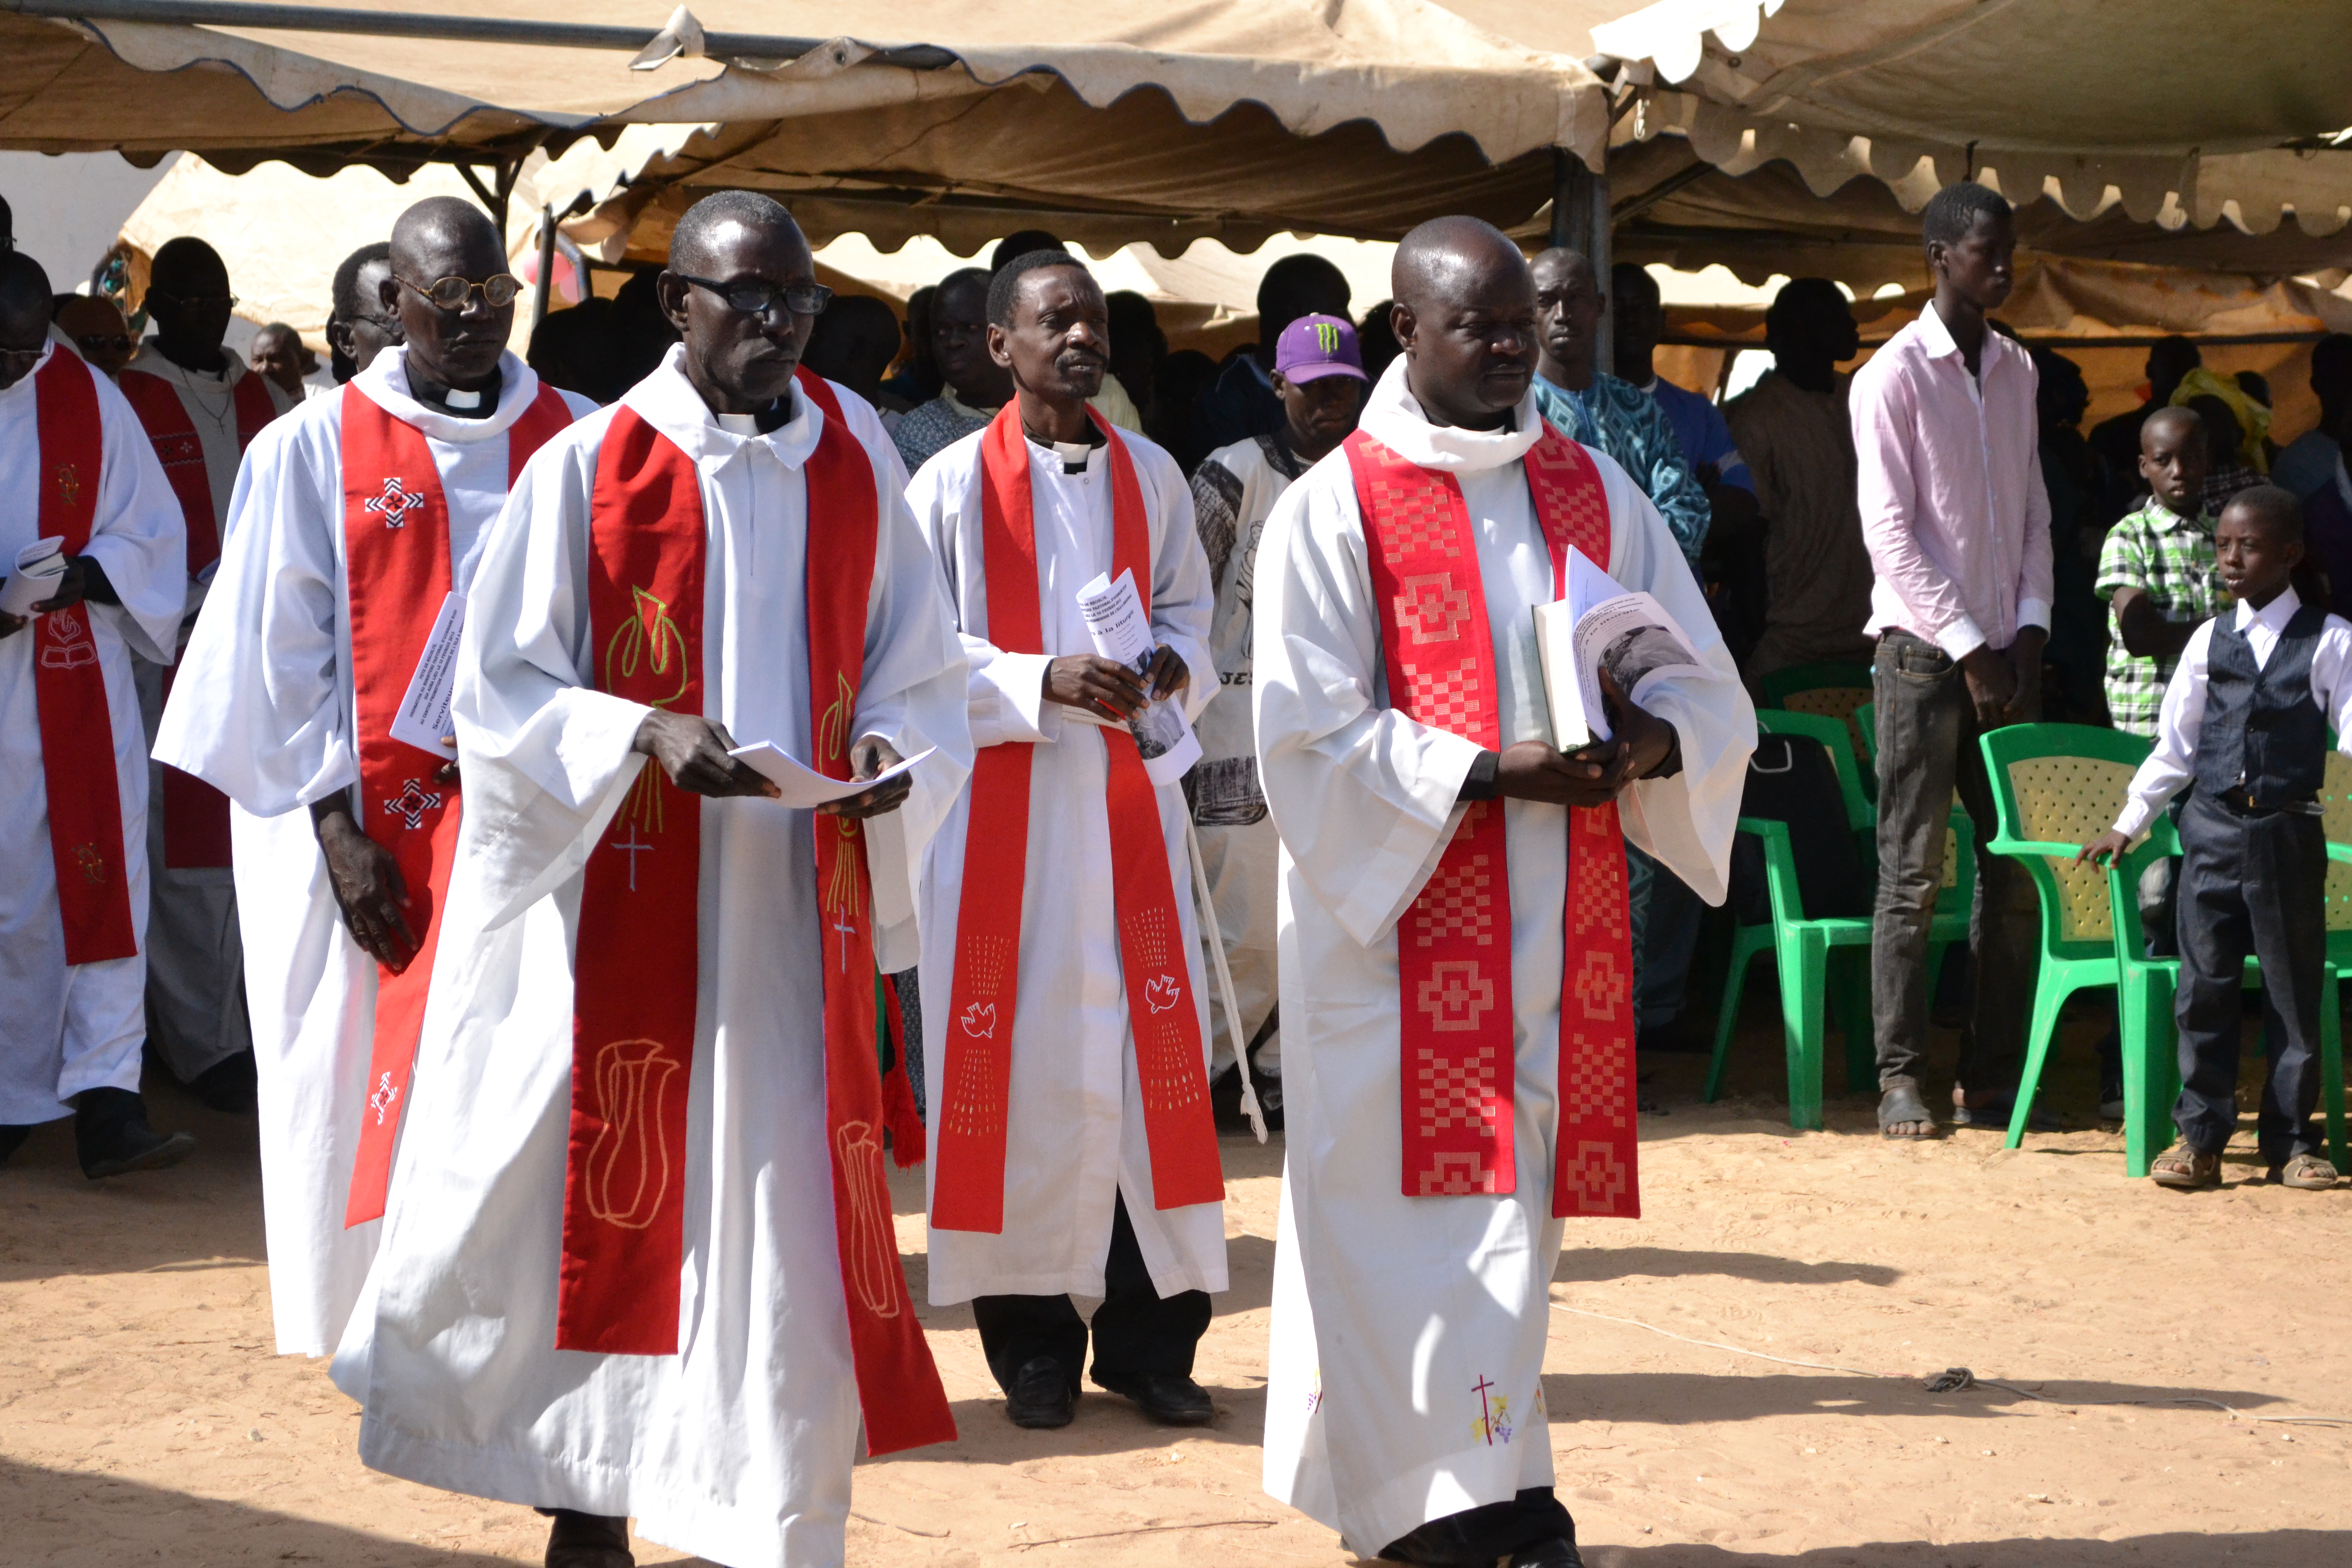 Senegalin kirkon papit tulevat juhlakulkueessa. Etualalla pastorit Ndeb Diouf